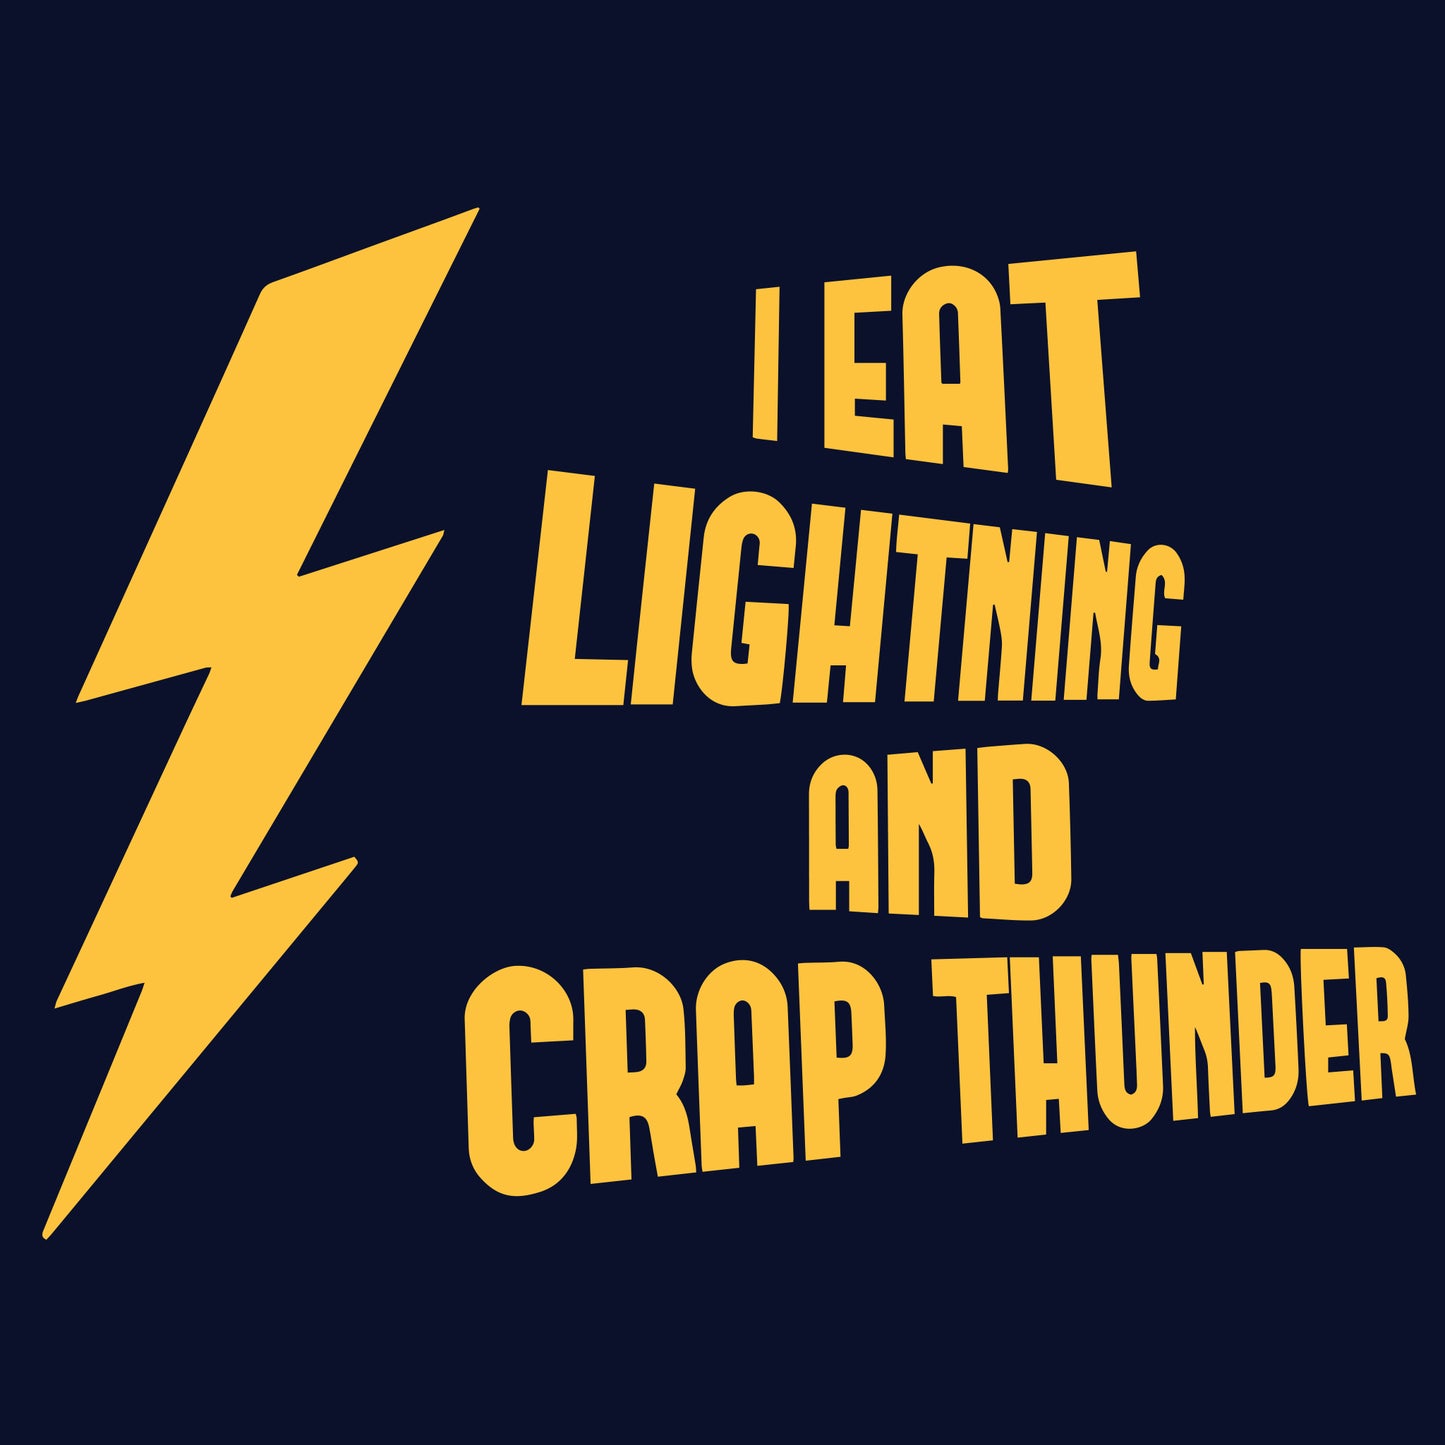 Eat Lightning